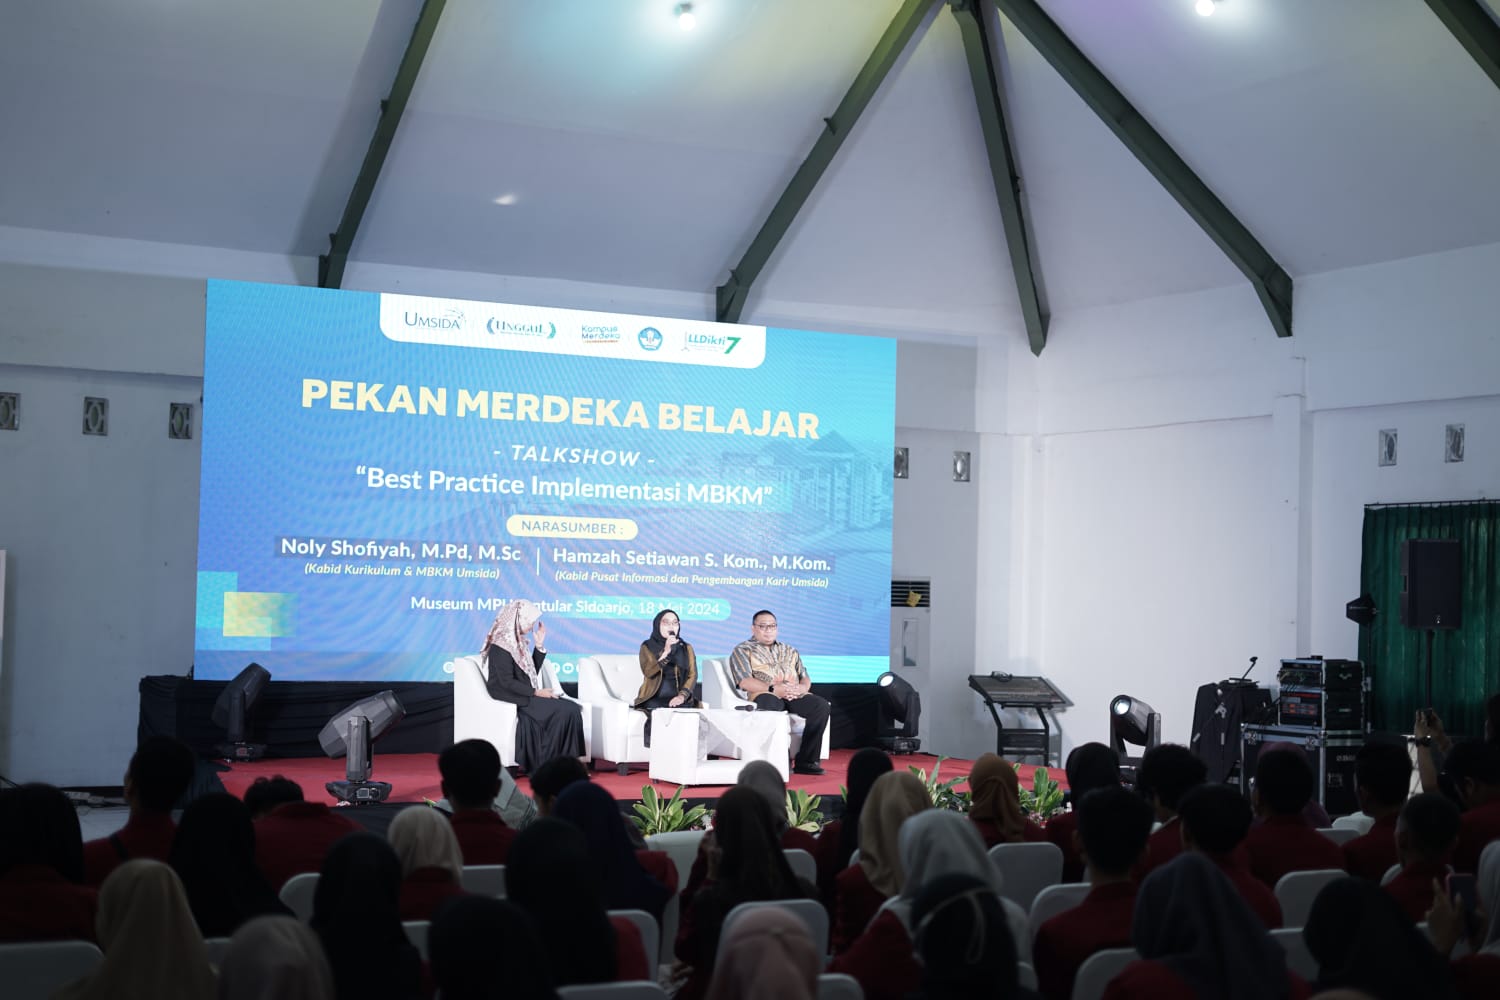 Jalankan MBKM Dengan Sukses, Umsida Isi Rangkaian Festival Merdeka Belajar